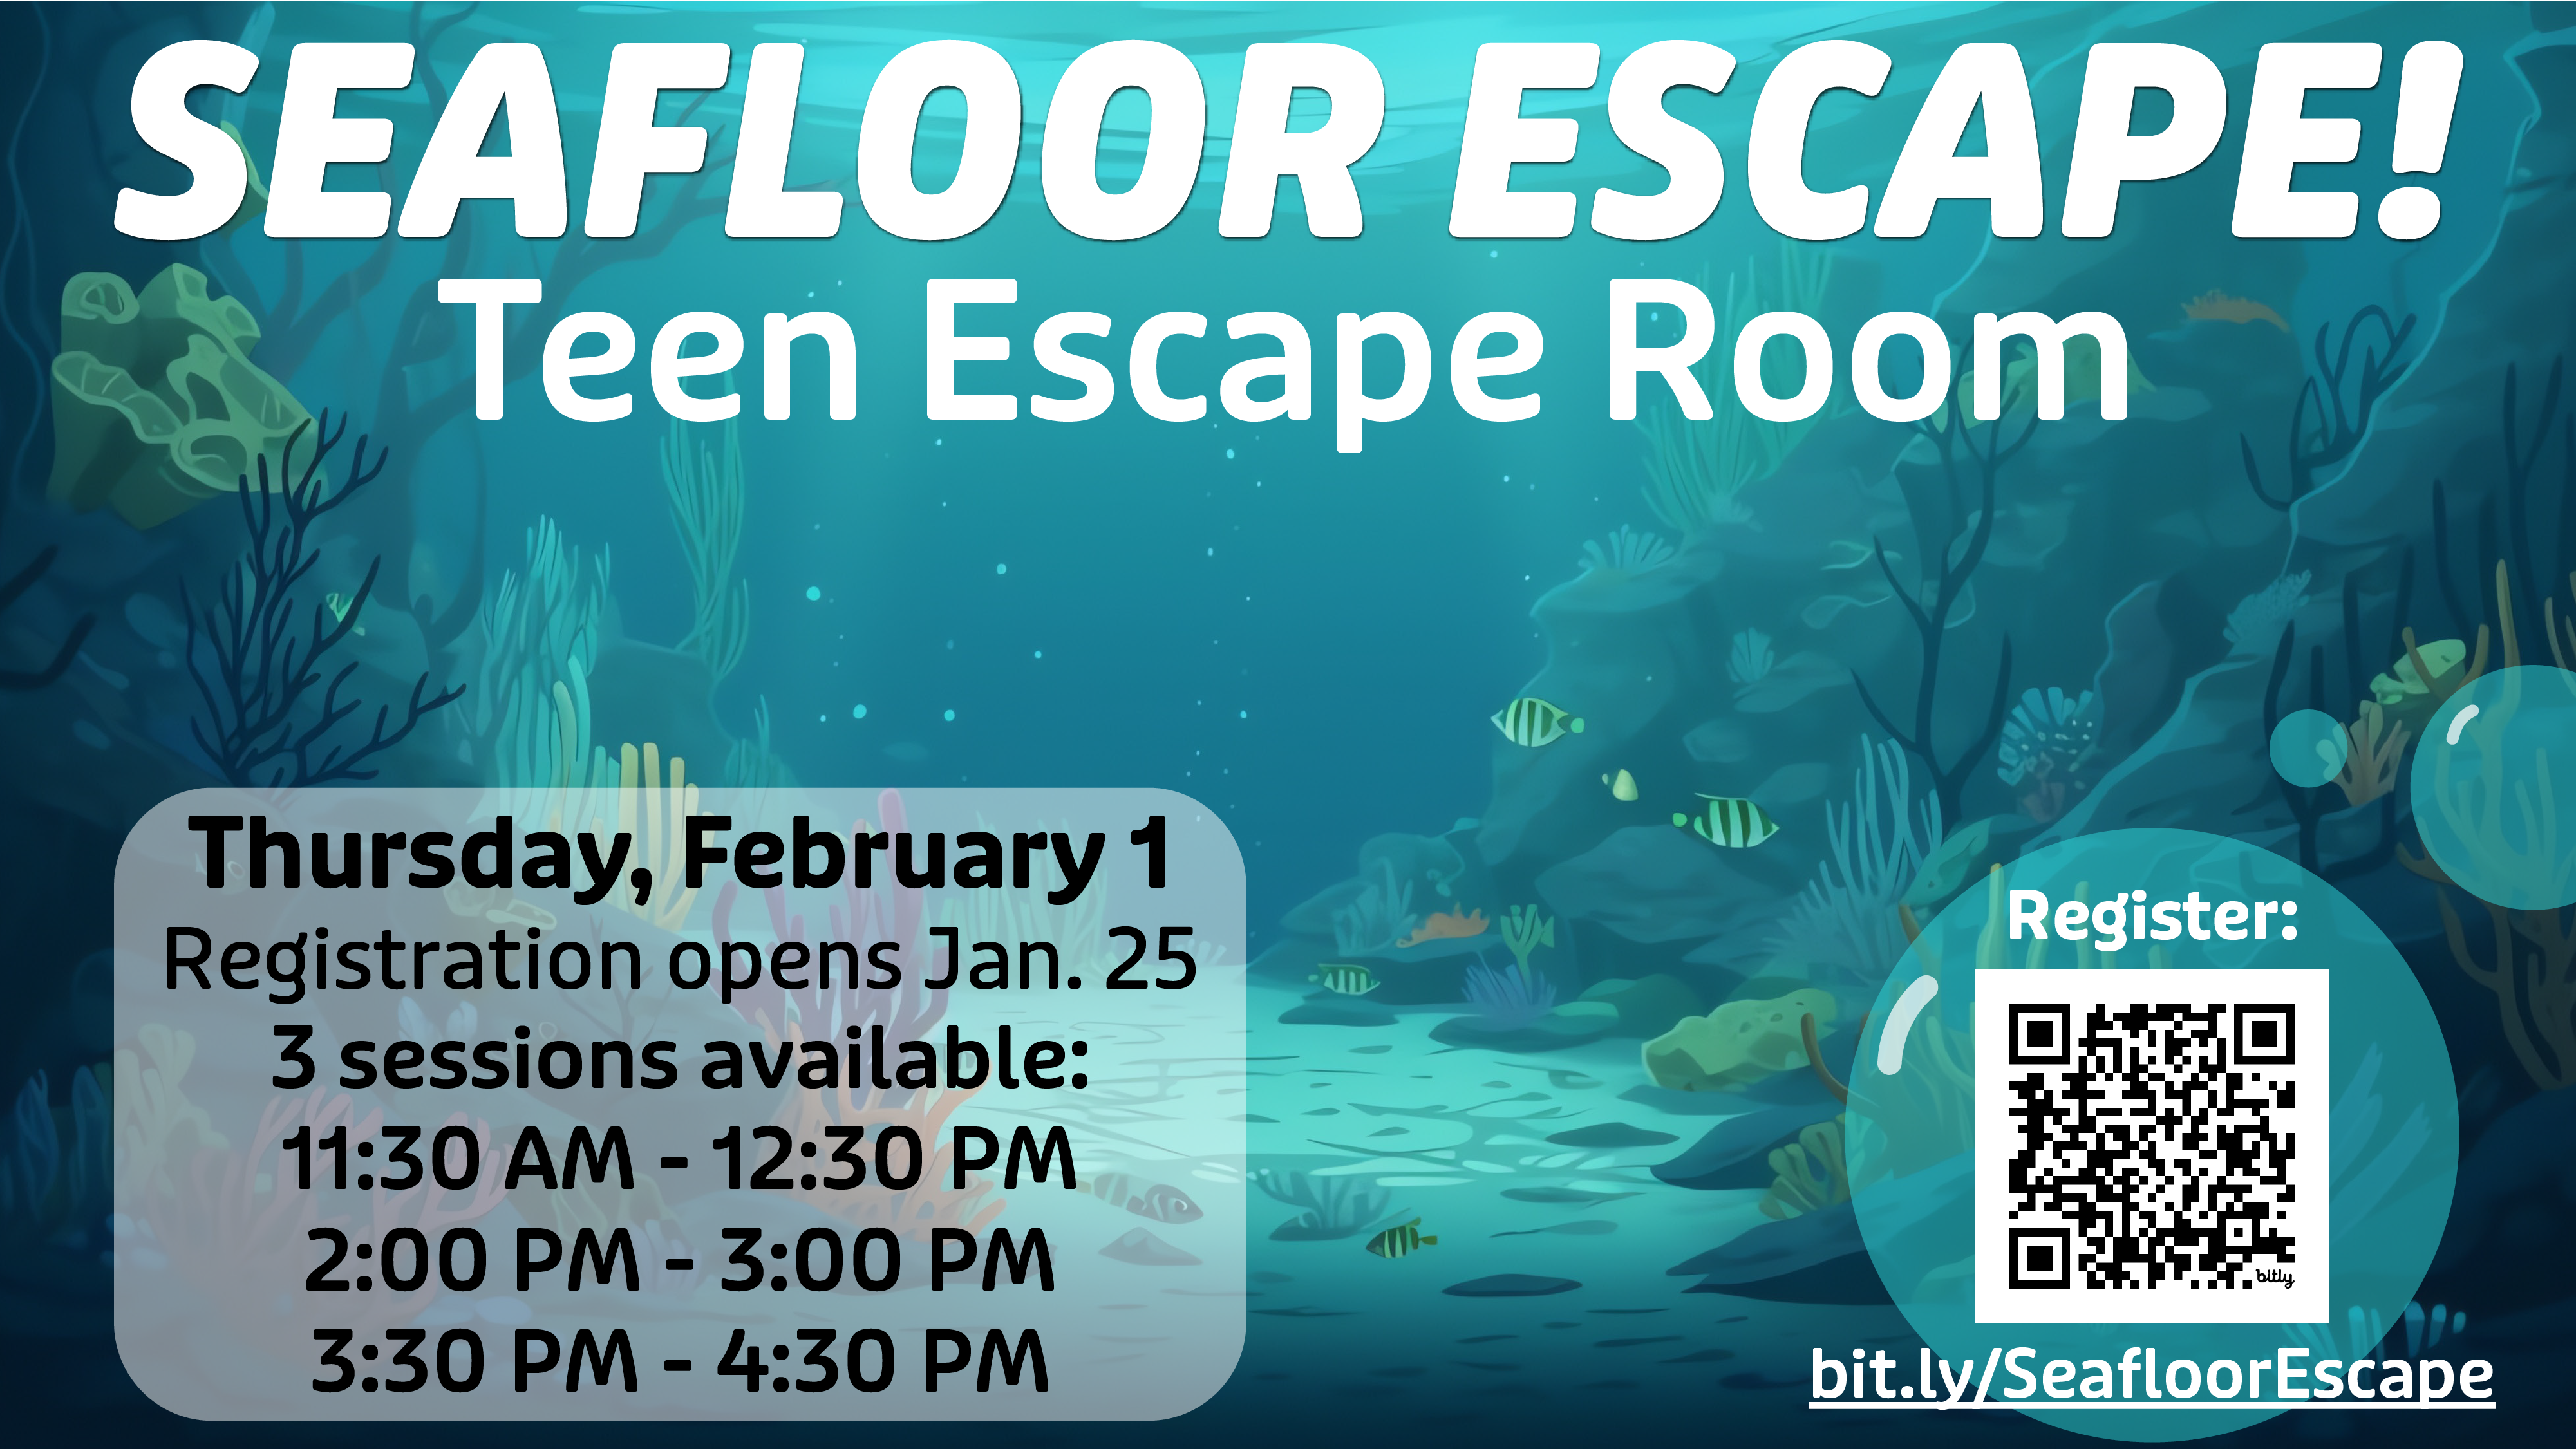 Seafloor Escape! Teen Escape Room